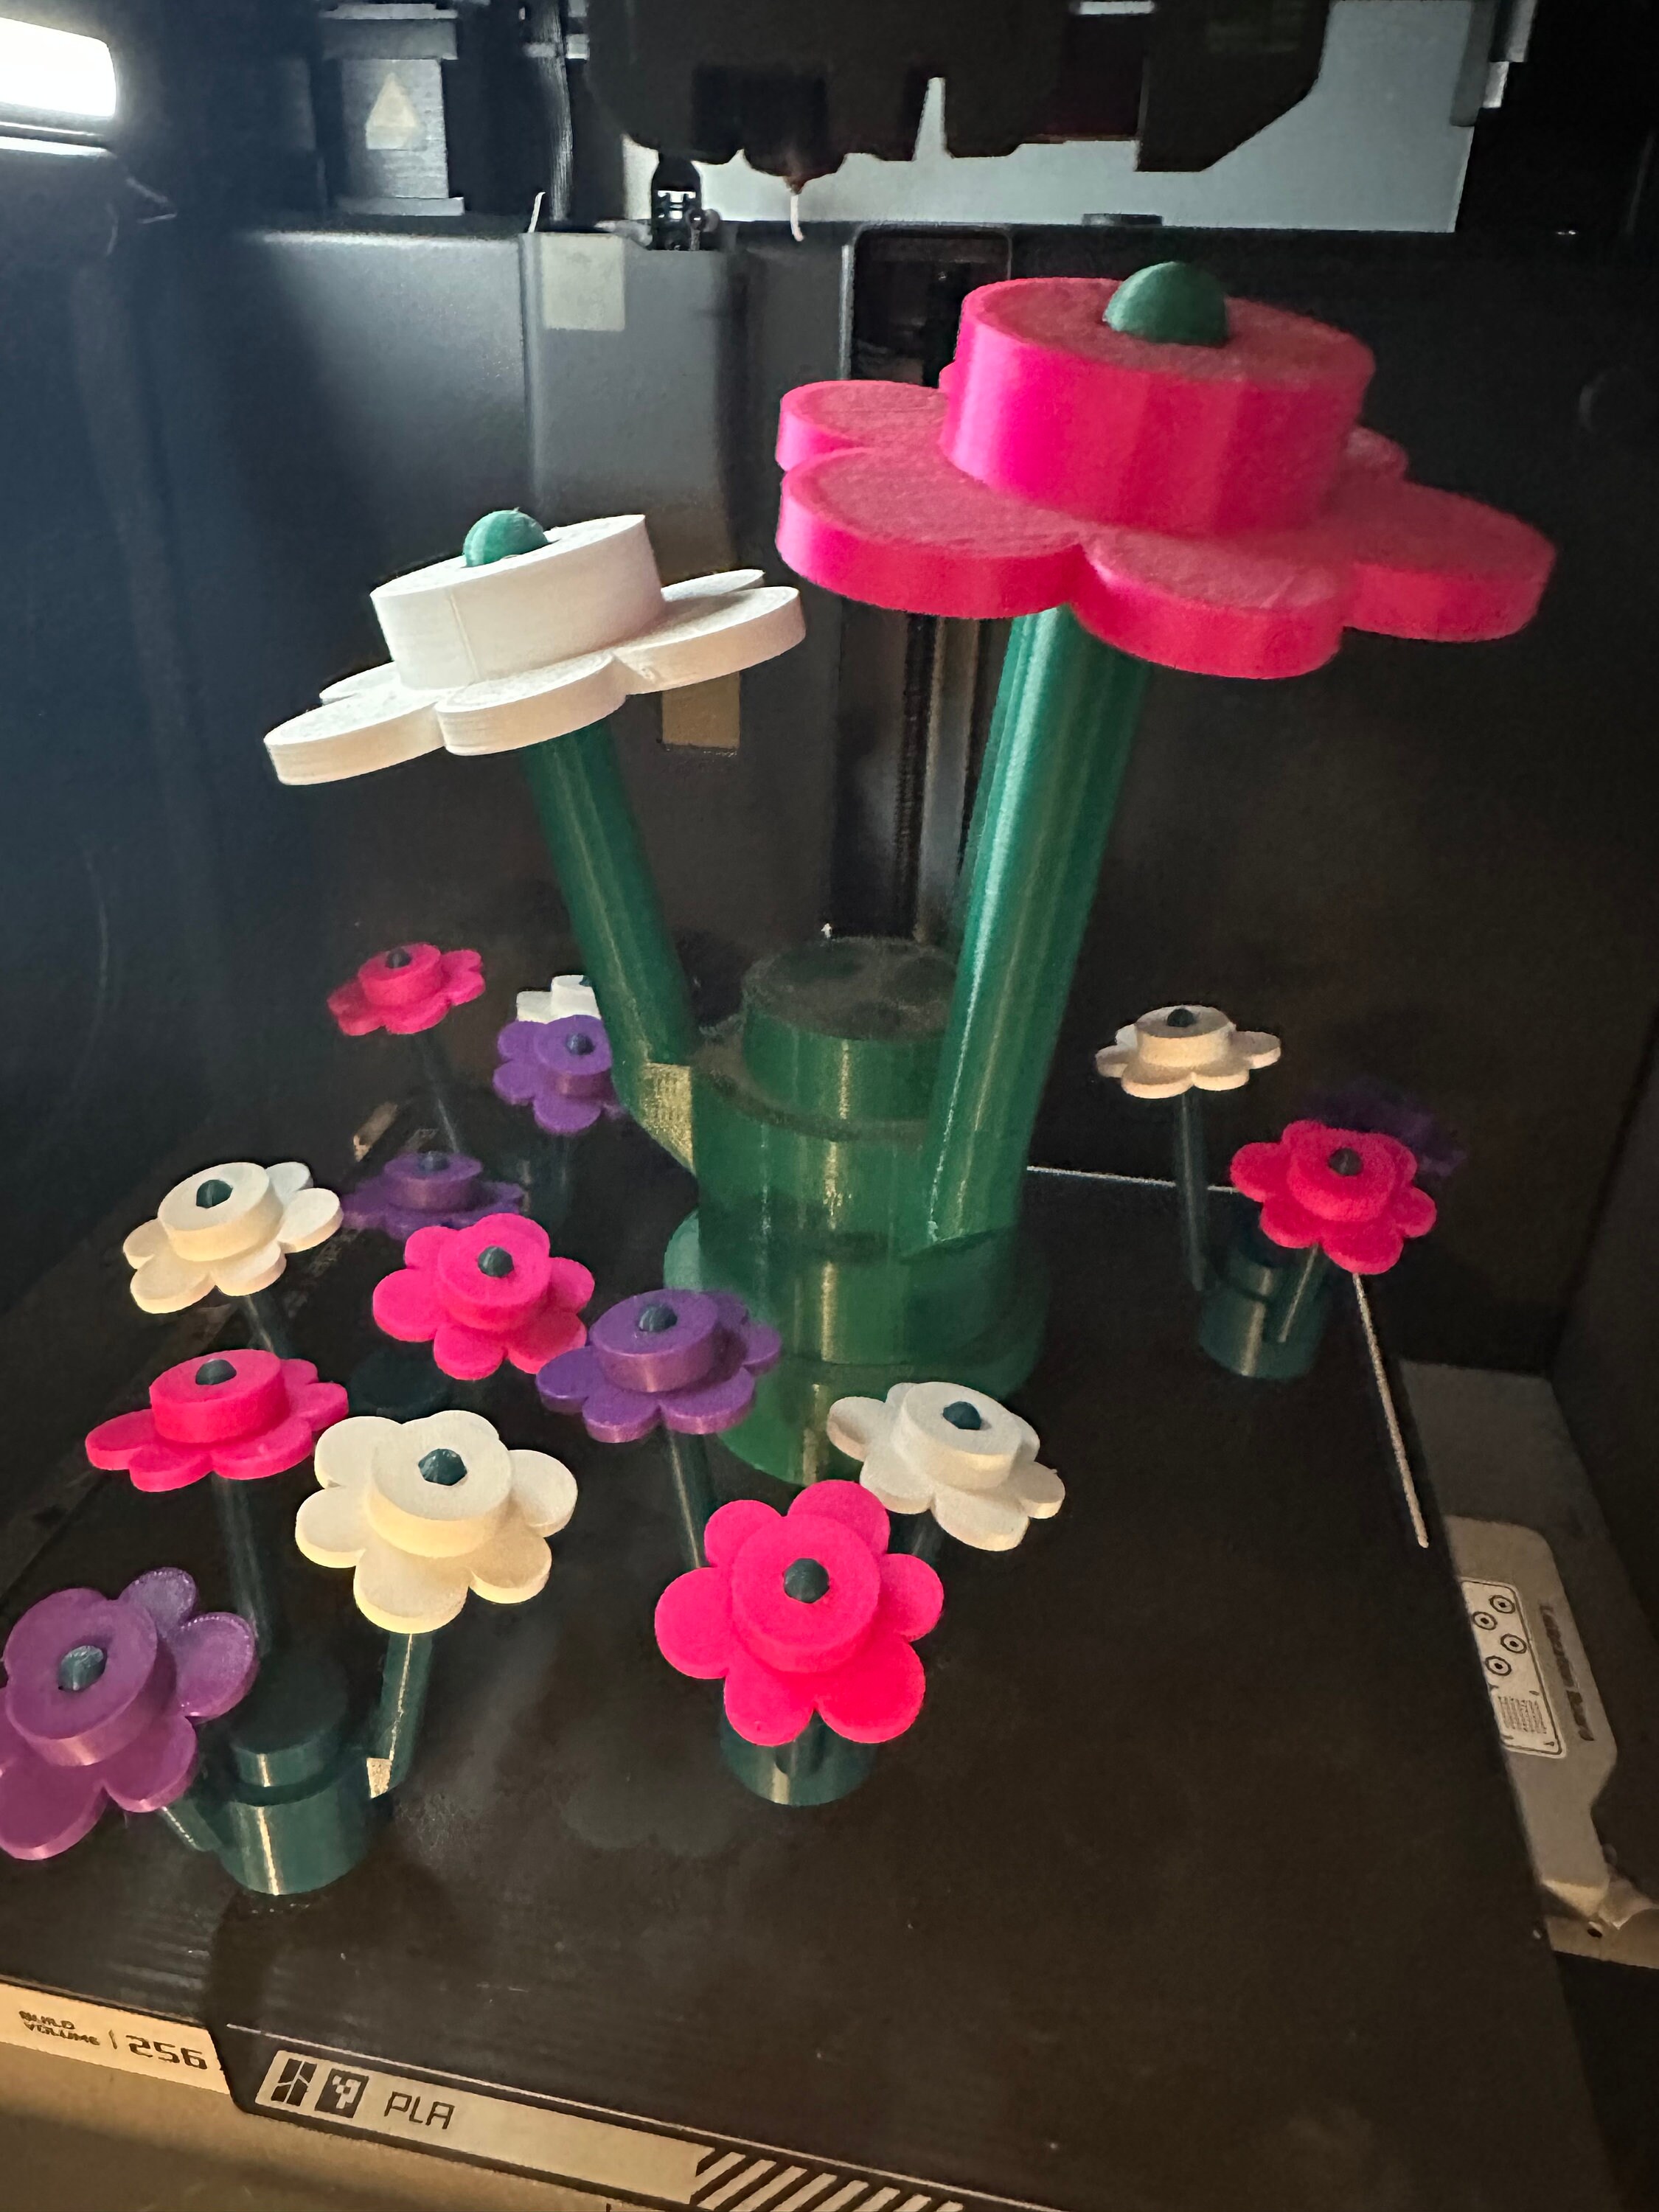 Soportes de pared para flores LEGO® LEGO® Flower Bouquet 10280, tulipanes  40461, rosas 40460 o girasoles 40524 -  México